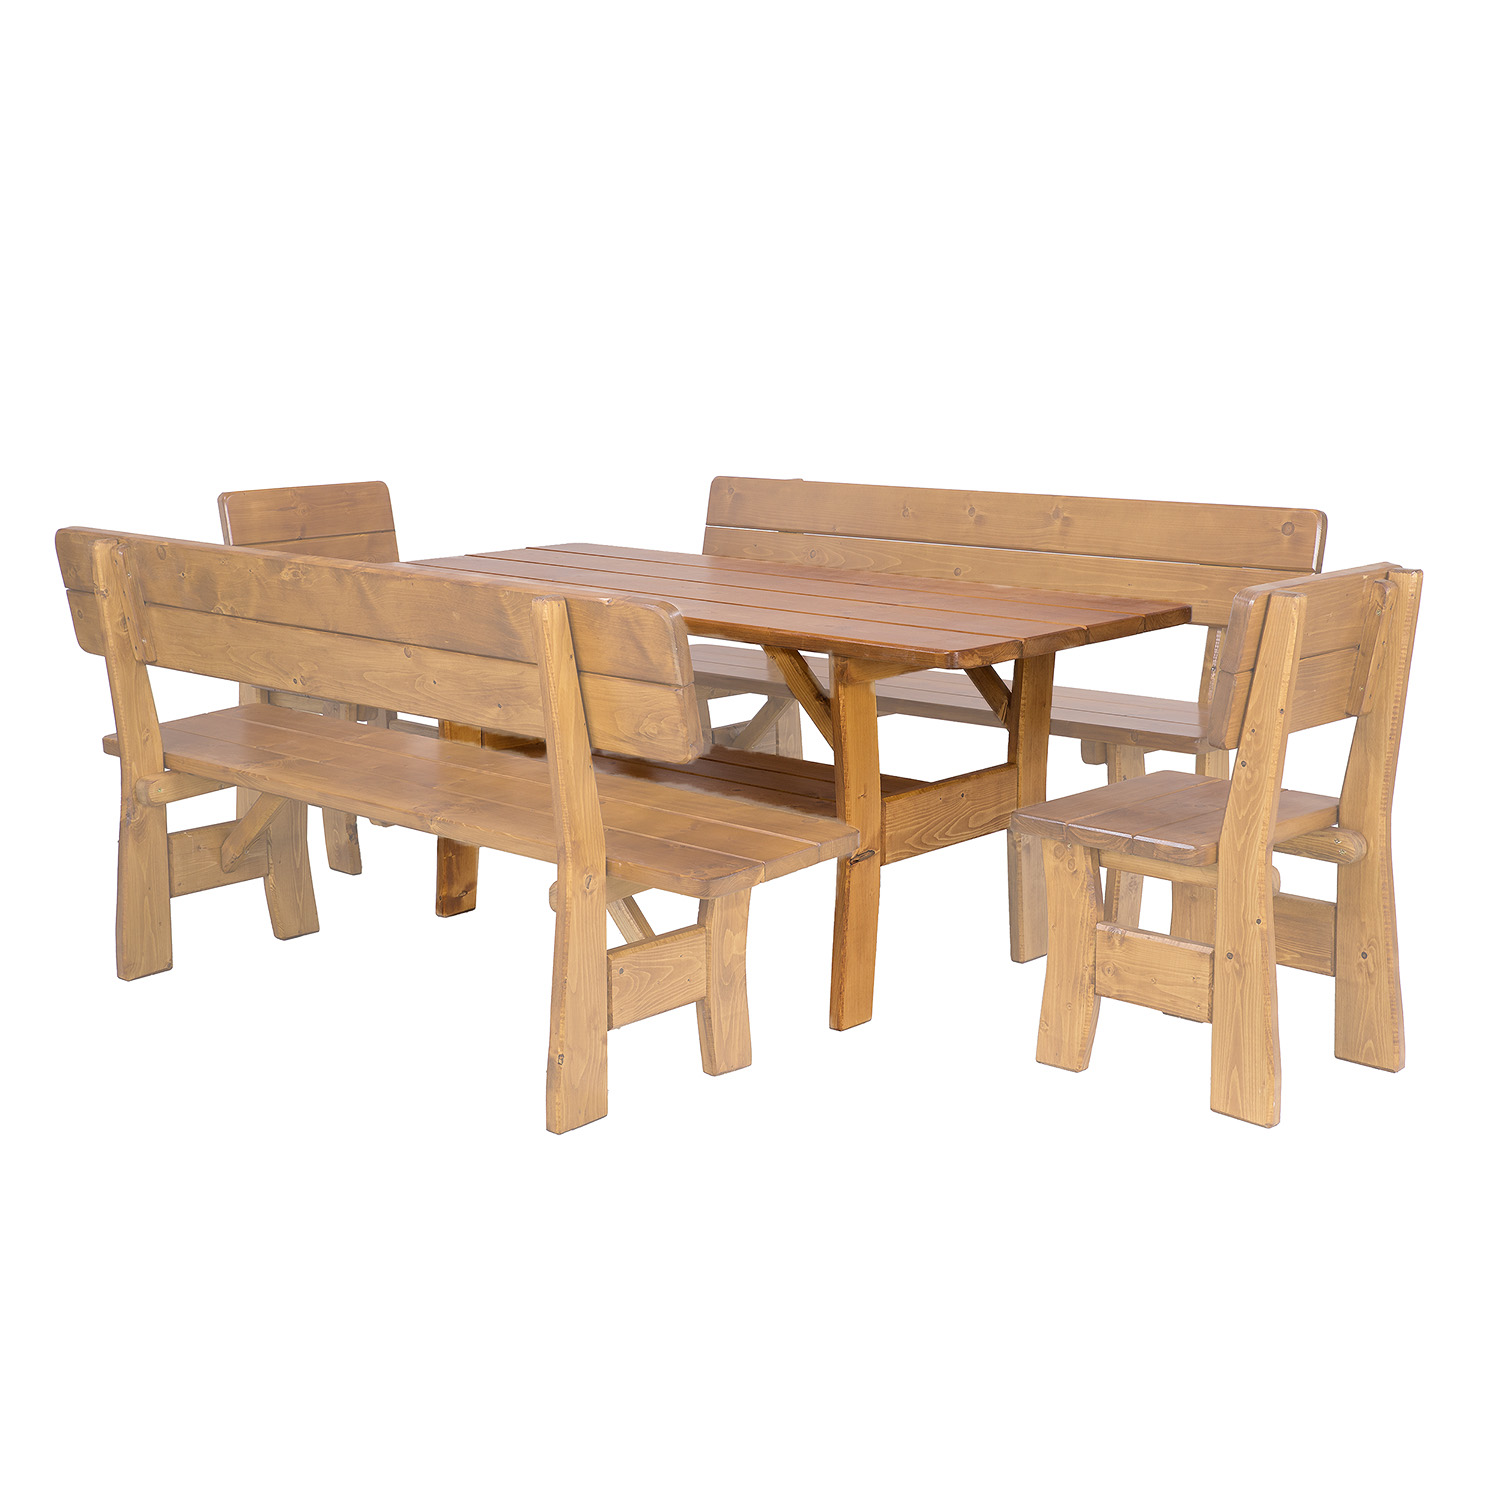 Zahradní stůl ze smrkového dřeva, lakovaný 180x81x80cm - Dub lak